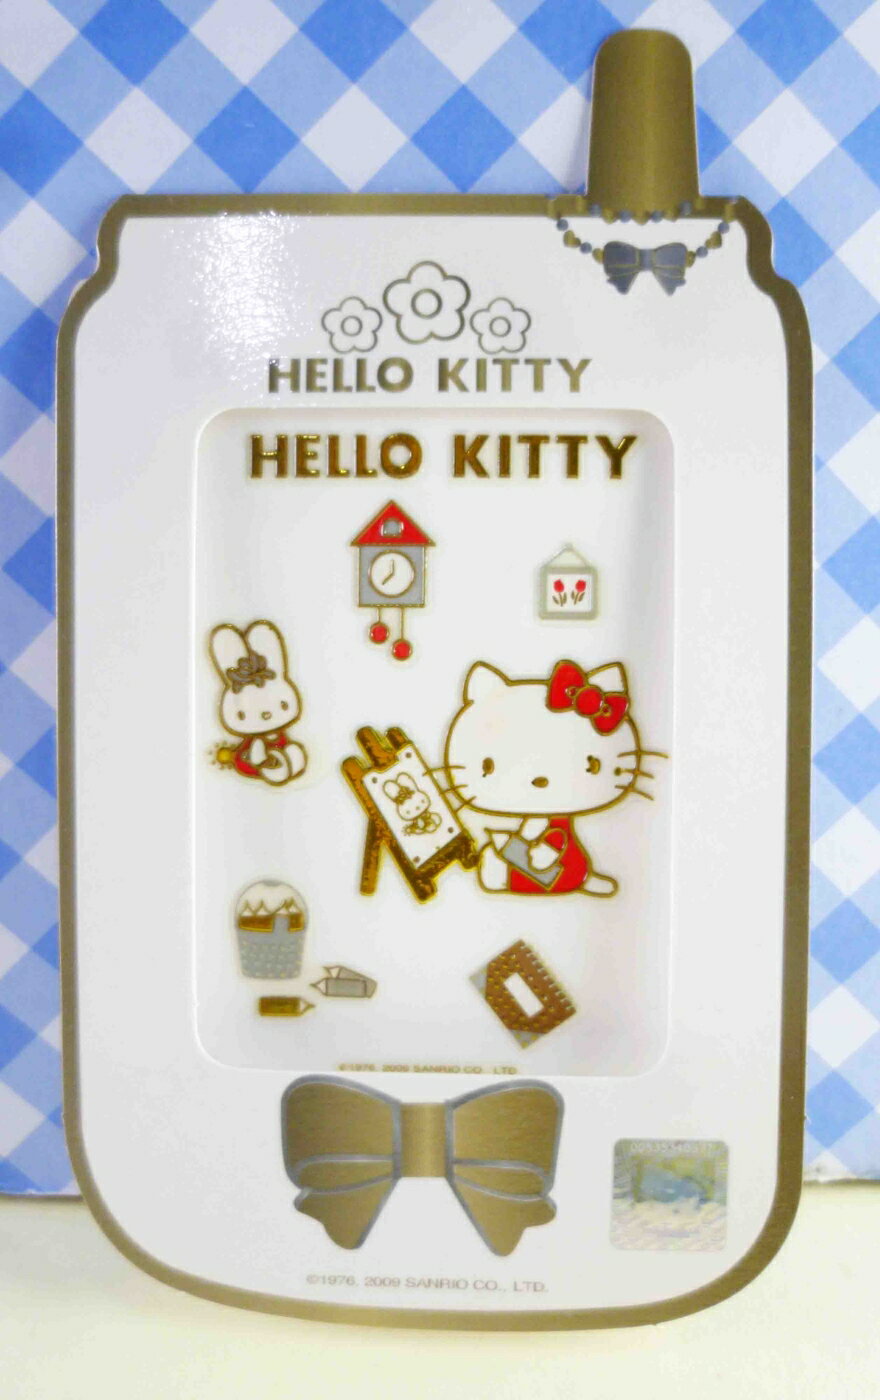 【震撼精品百貨】Hello Kitty 凱蒂貓 KITTY立體鋁鑽貼紙-畫畫 震撼日式精品百貨